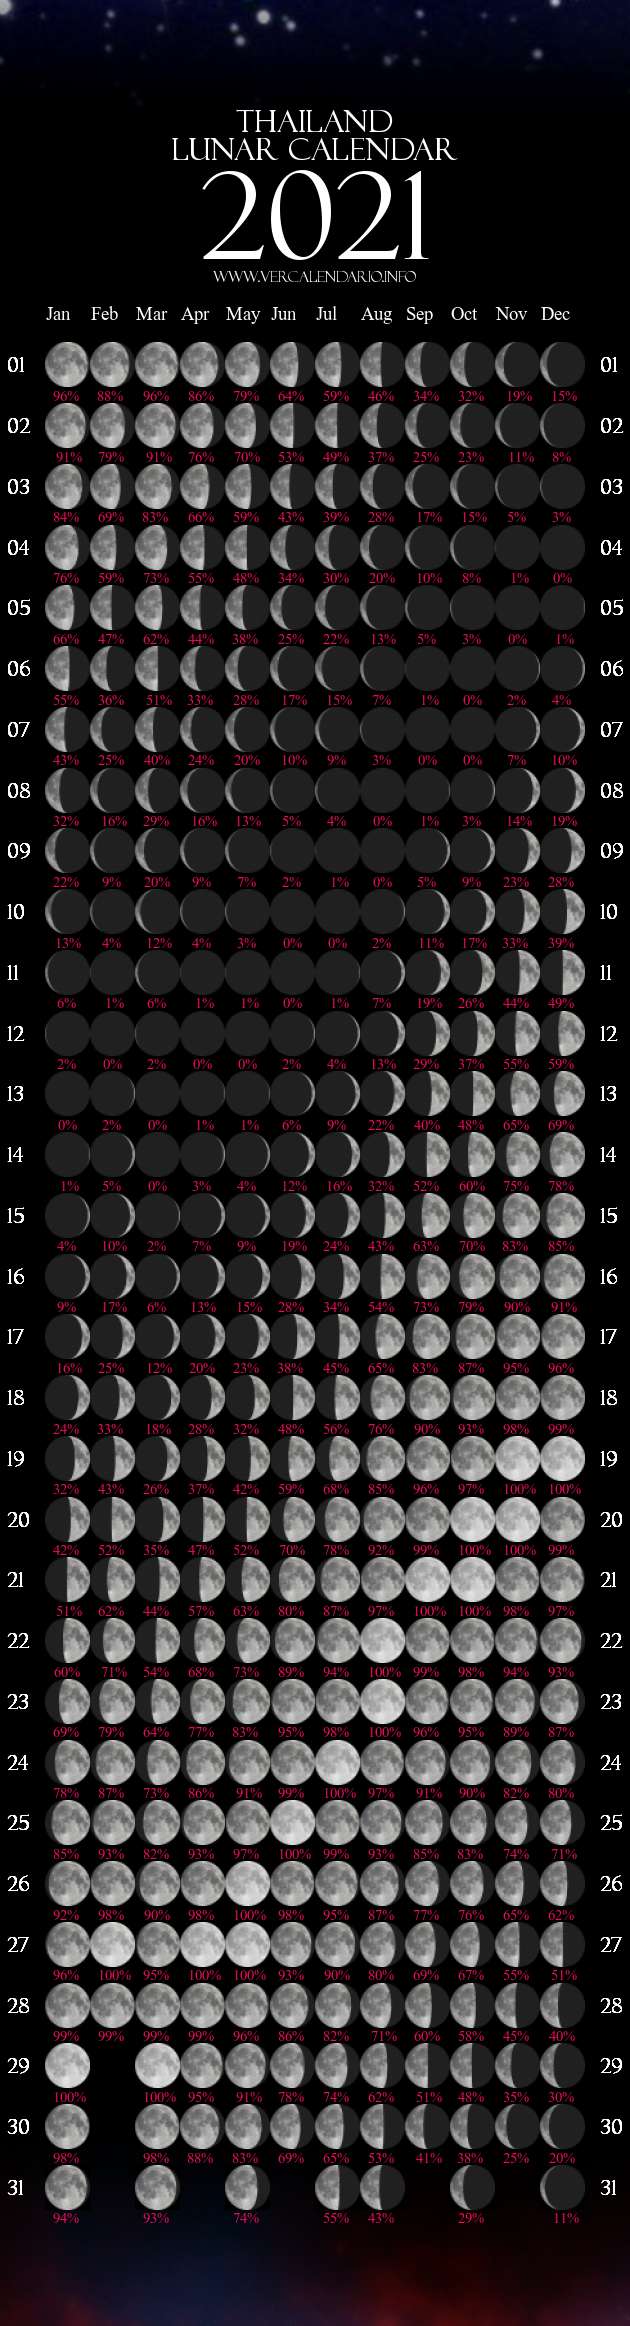 calendar with moon phases 2021 Lunar Calendar 2021 Thailand calendar with moon phases 2021